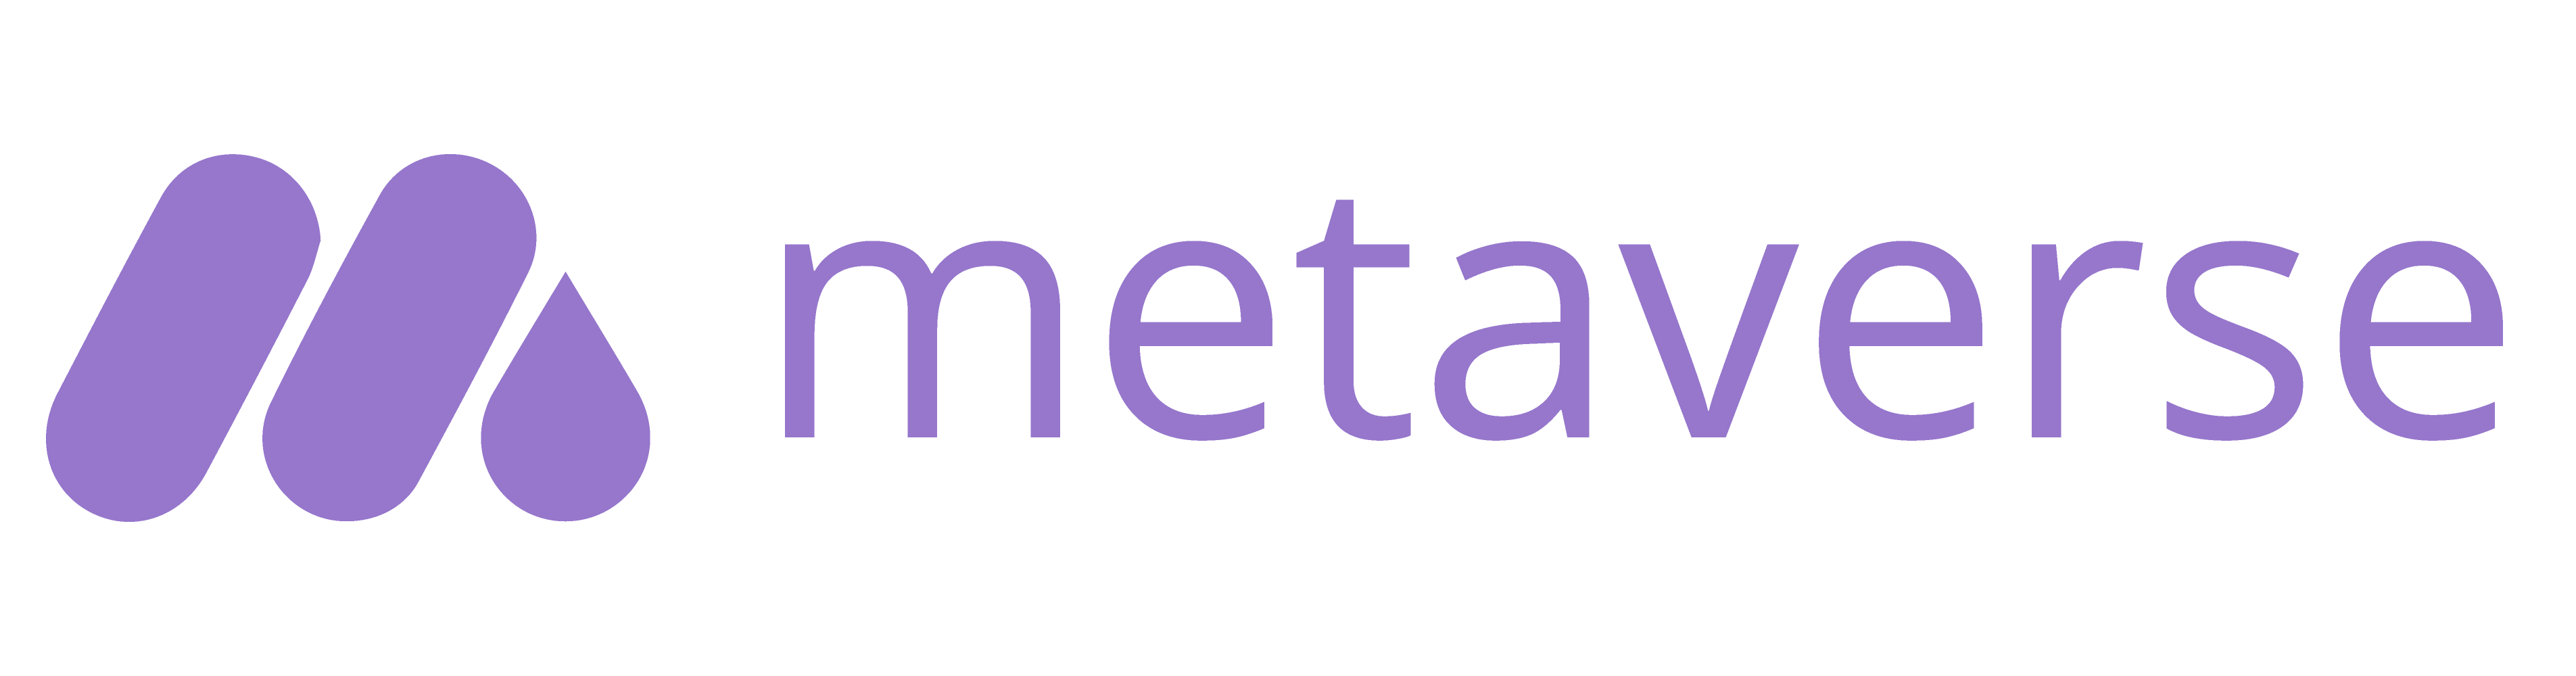 Logo Metaverse (gometa.io)